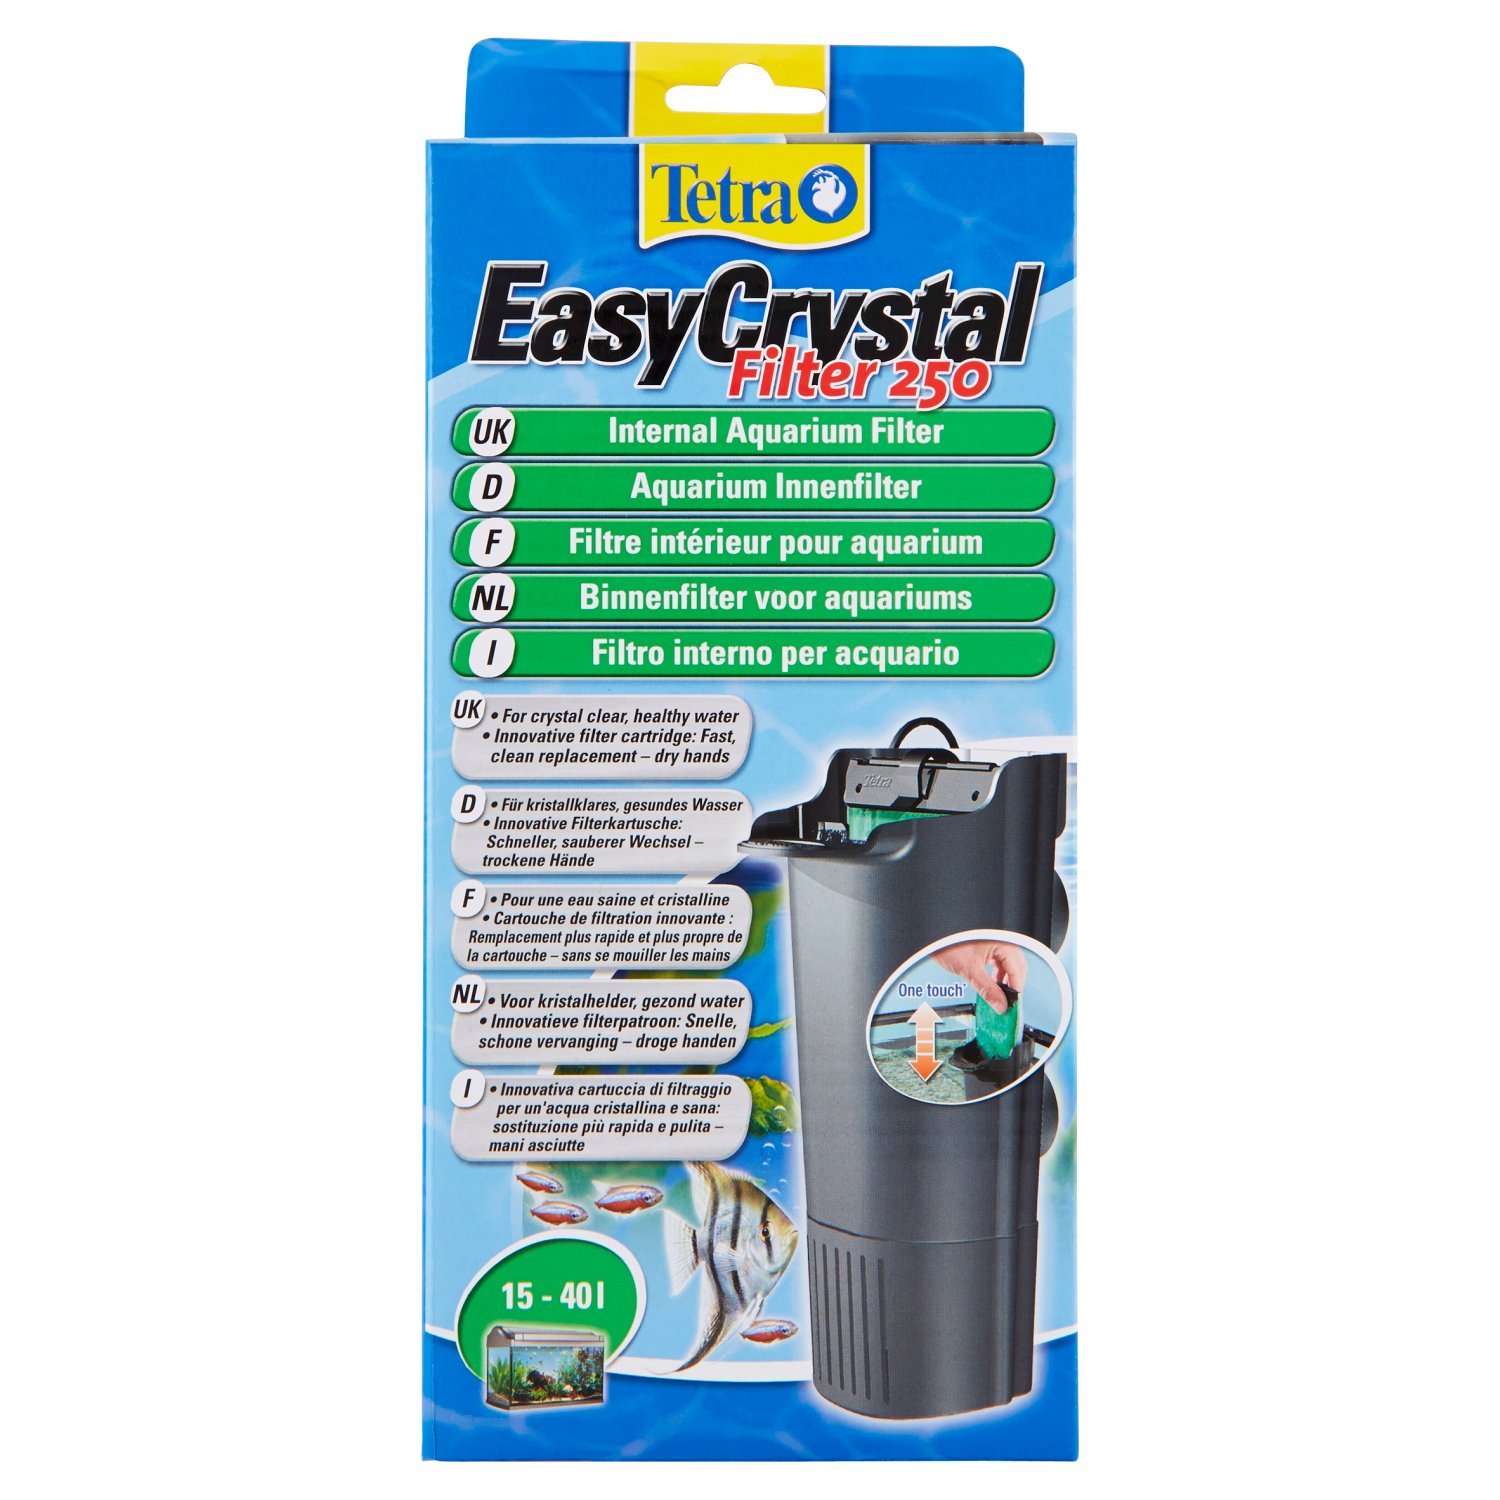 Tetra EasyCrystal Aquarium Innenfilter IN 250 - Filter für 10-40 L Aquarien, für kristallklares gesundes Wasser, einfache Pflege, intensive mechanische, biologische und chemische Filterung